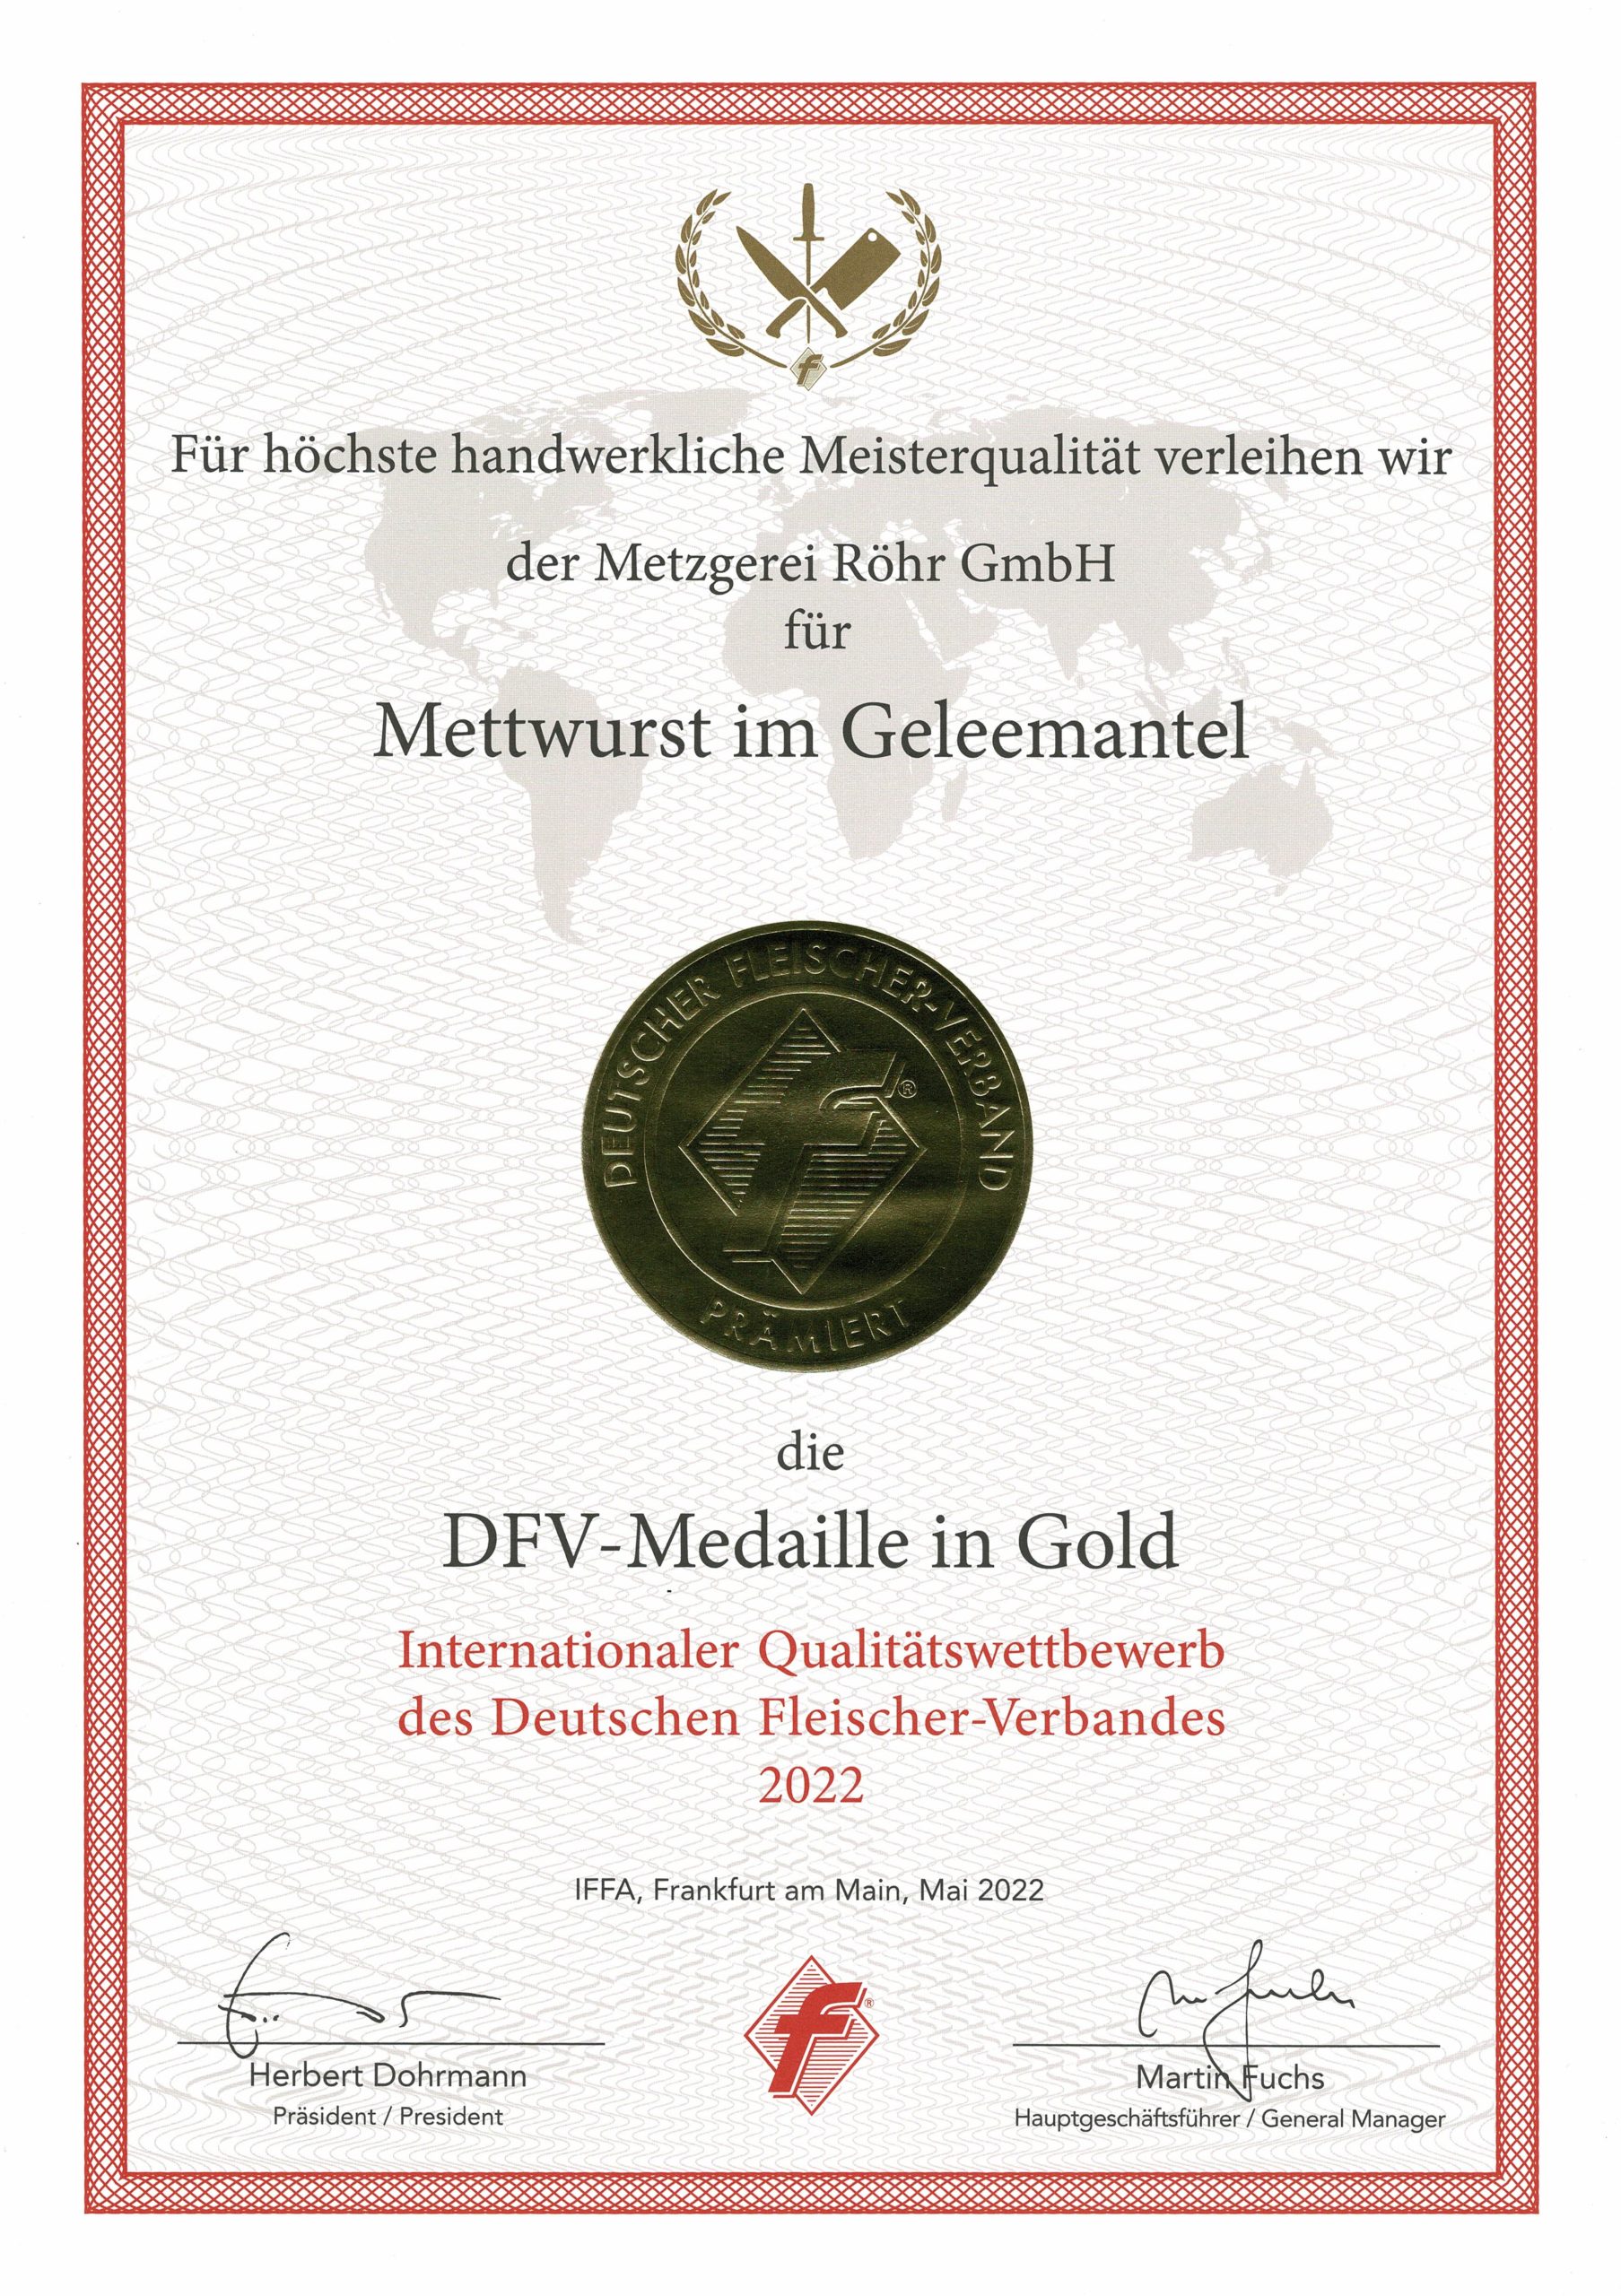 DFV-Medaille in Gold für Mettwurst im Geleemantel